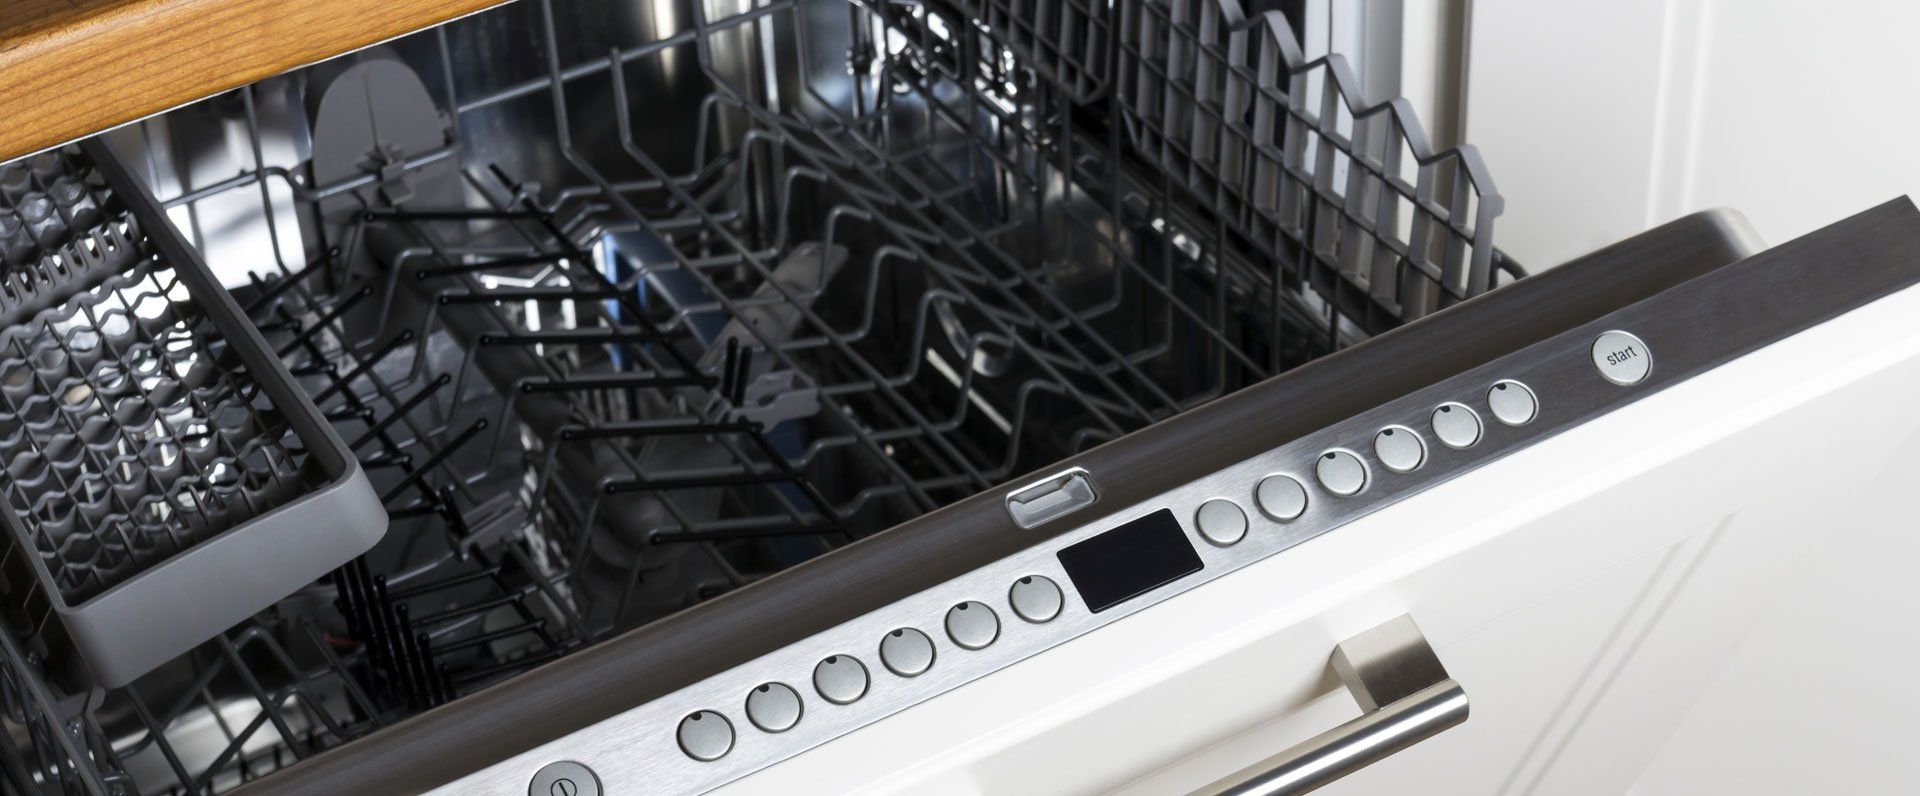 Dishwasher repairs 